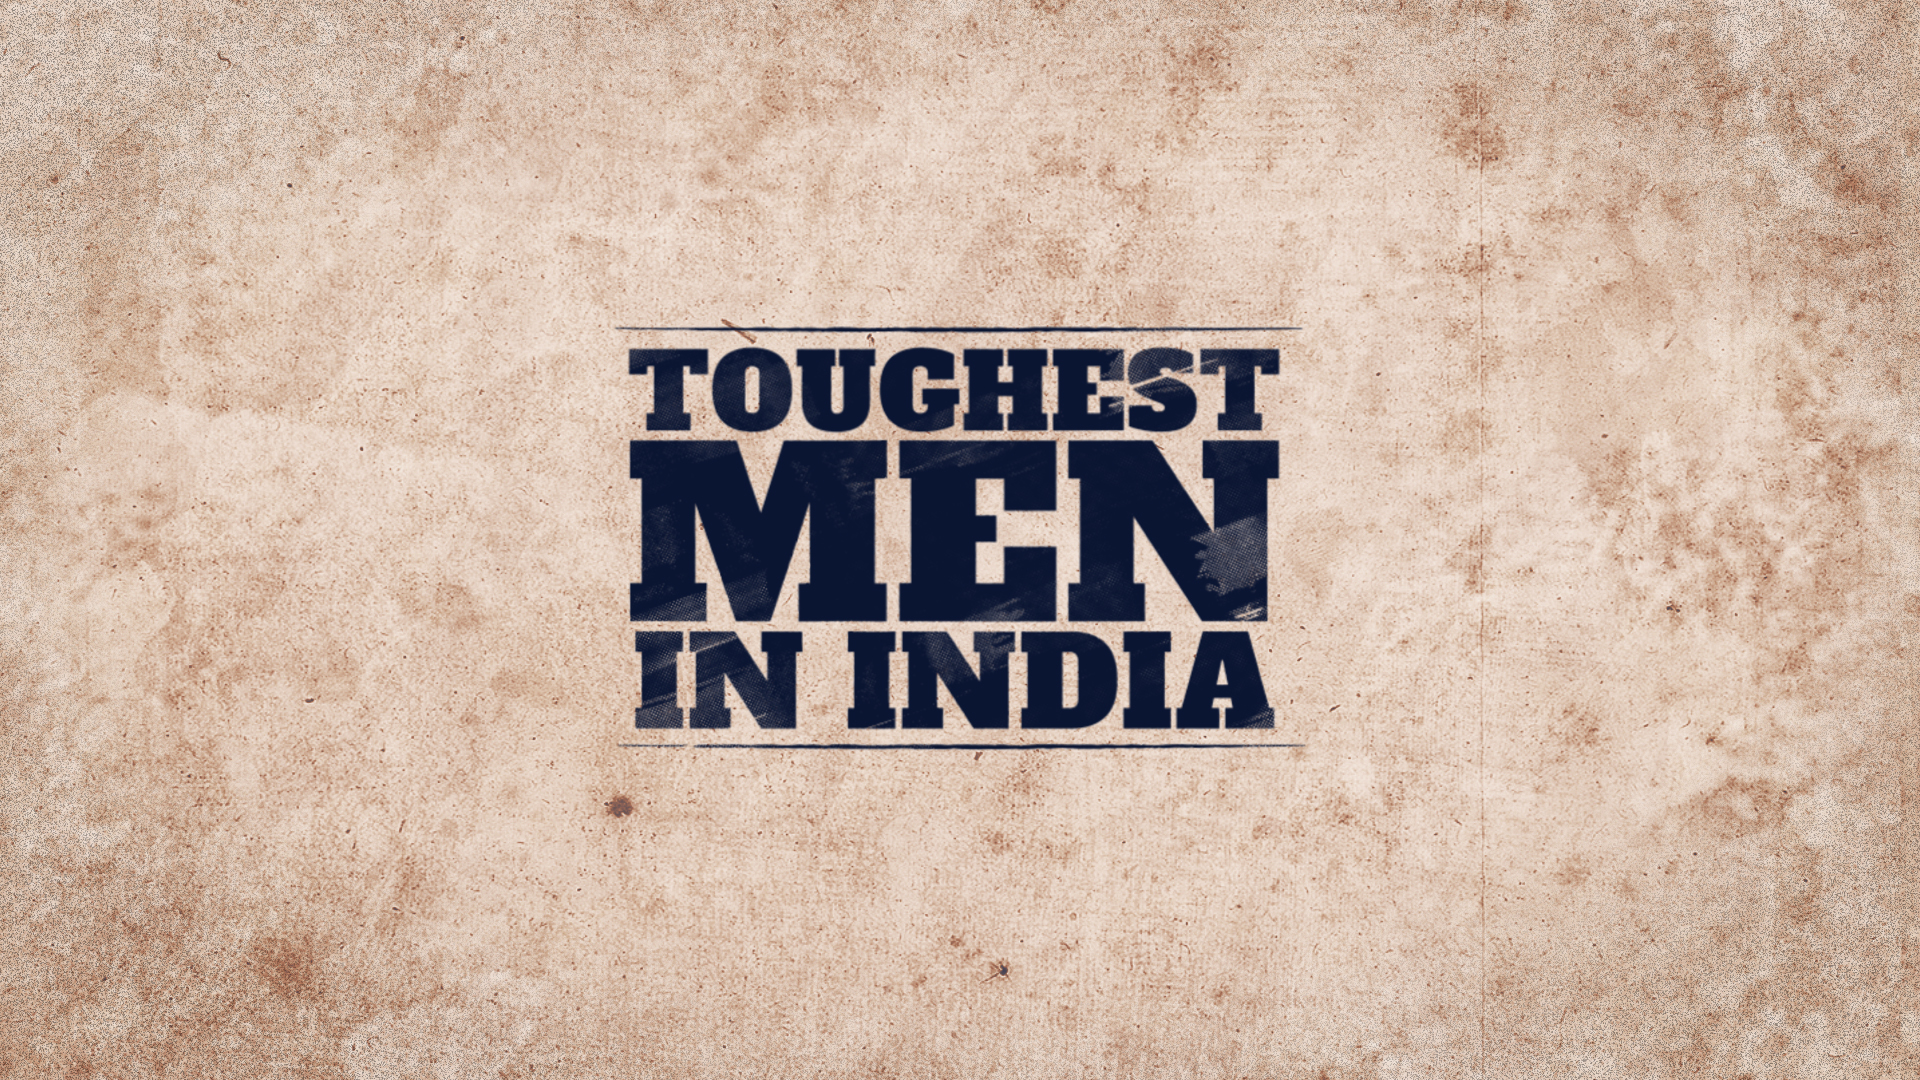 Toughest Men in India